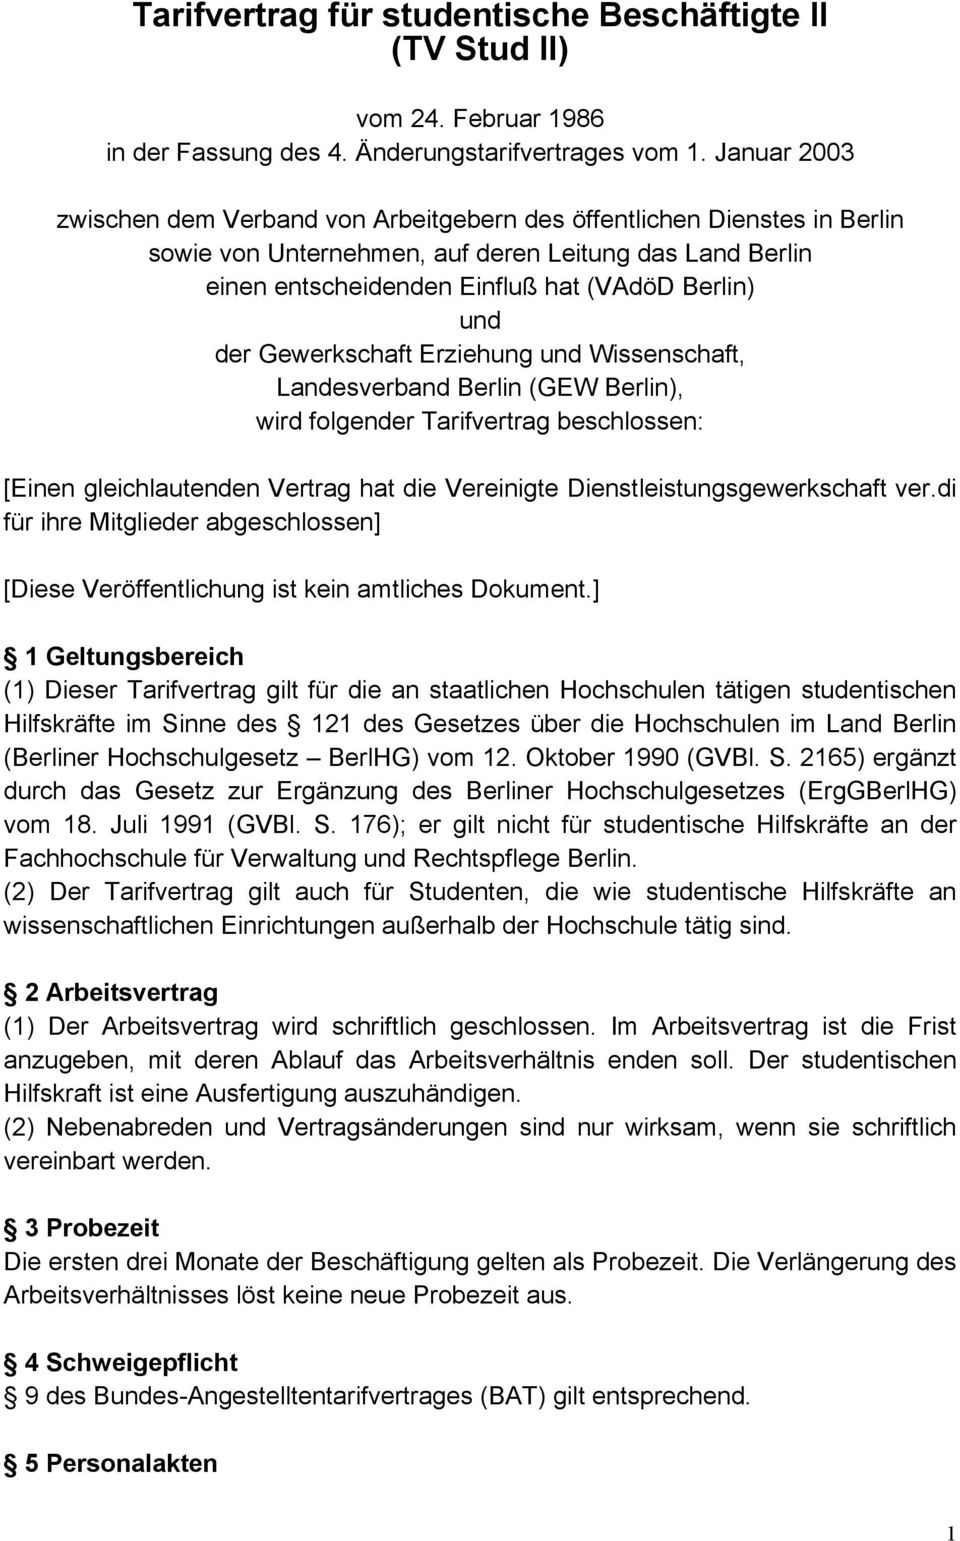 Gewerkschaft Erziehung und Wissenschaft, Landesverband Berlin (GEW Berlin), wird folgender Tarifvertrag beschlossen: [Einen gleichlautenden Vertrag hat die Vereinigte Dienstleistungsgewerkschaft ver.